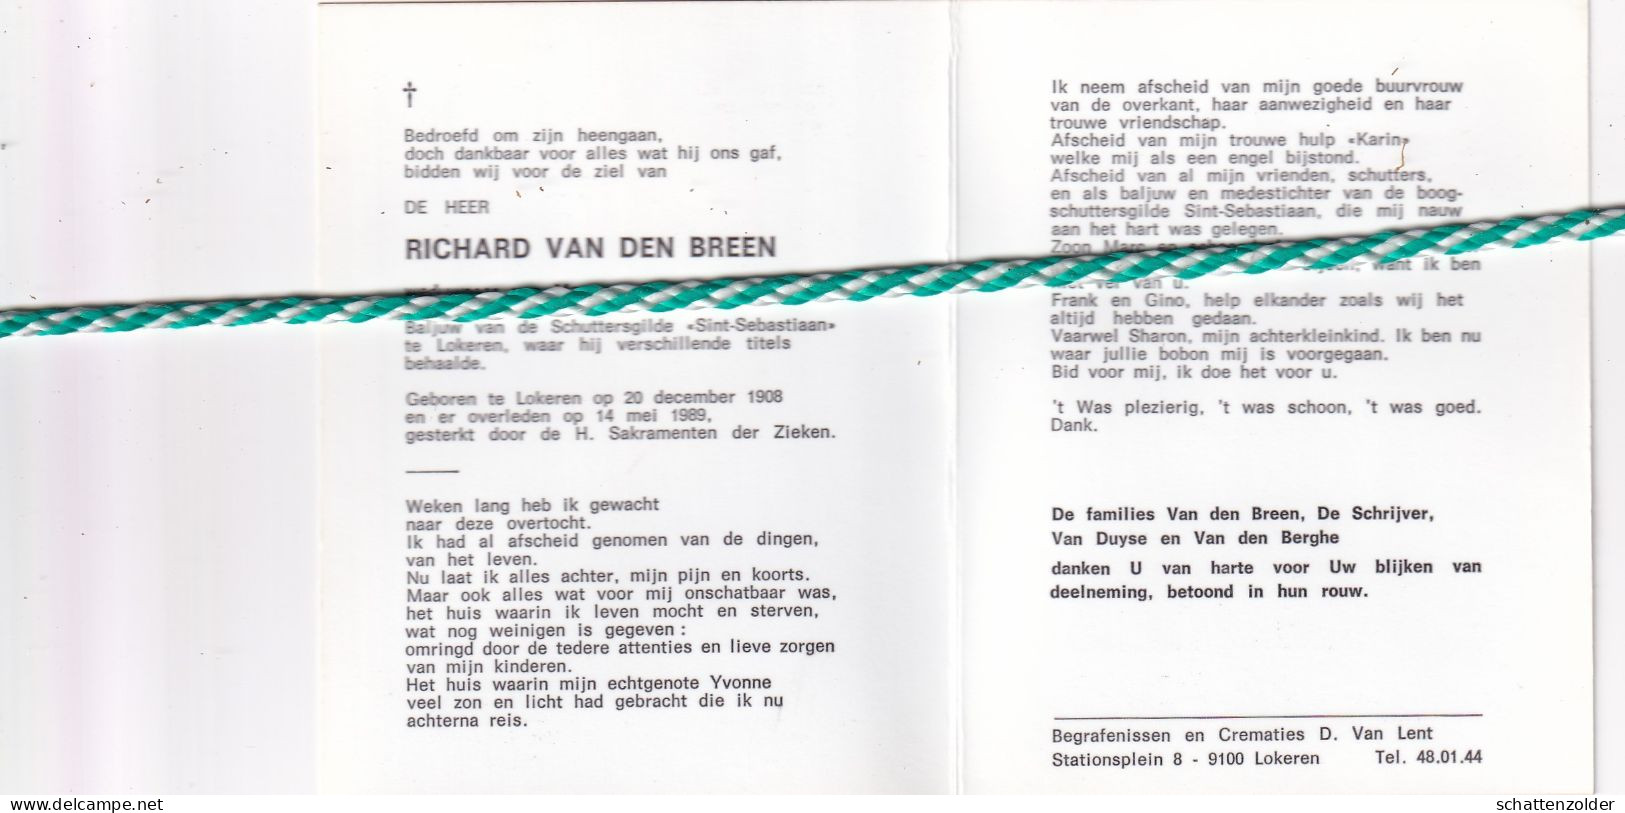 Richard Van Den Breen-De Schrijver, Lokeren 1908, 1989. Foto Baljuw Schuttersgilde "Sint-Sebastiaan" - Overlijden